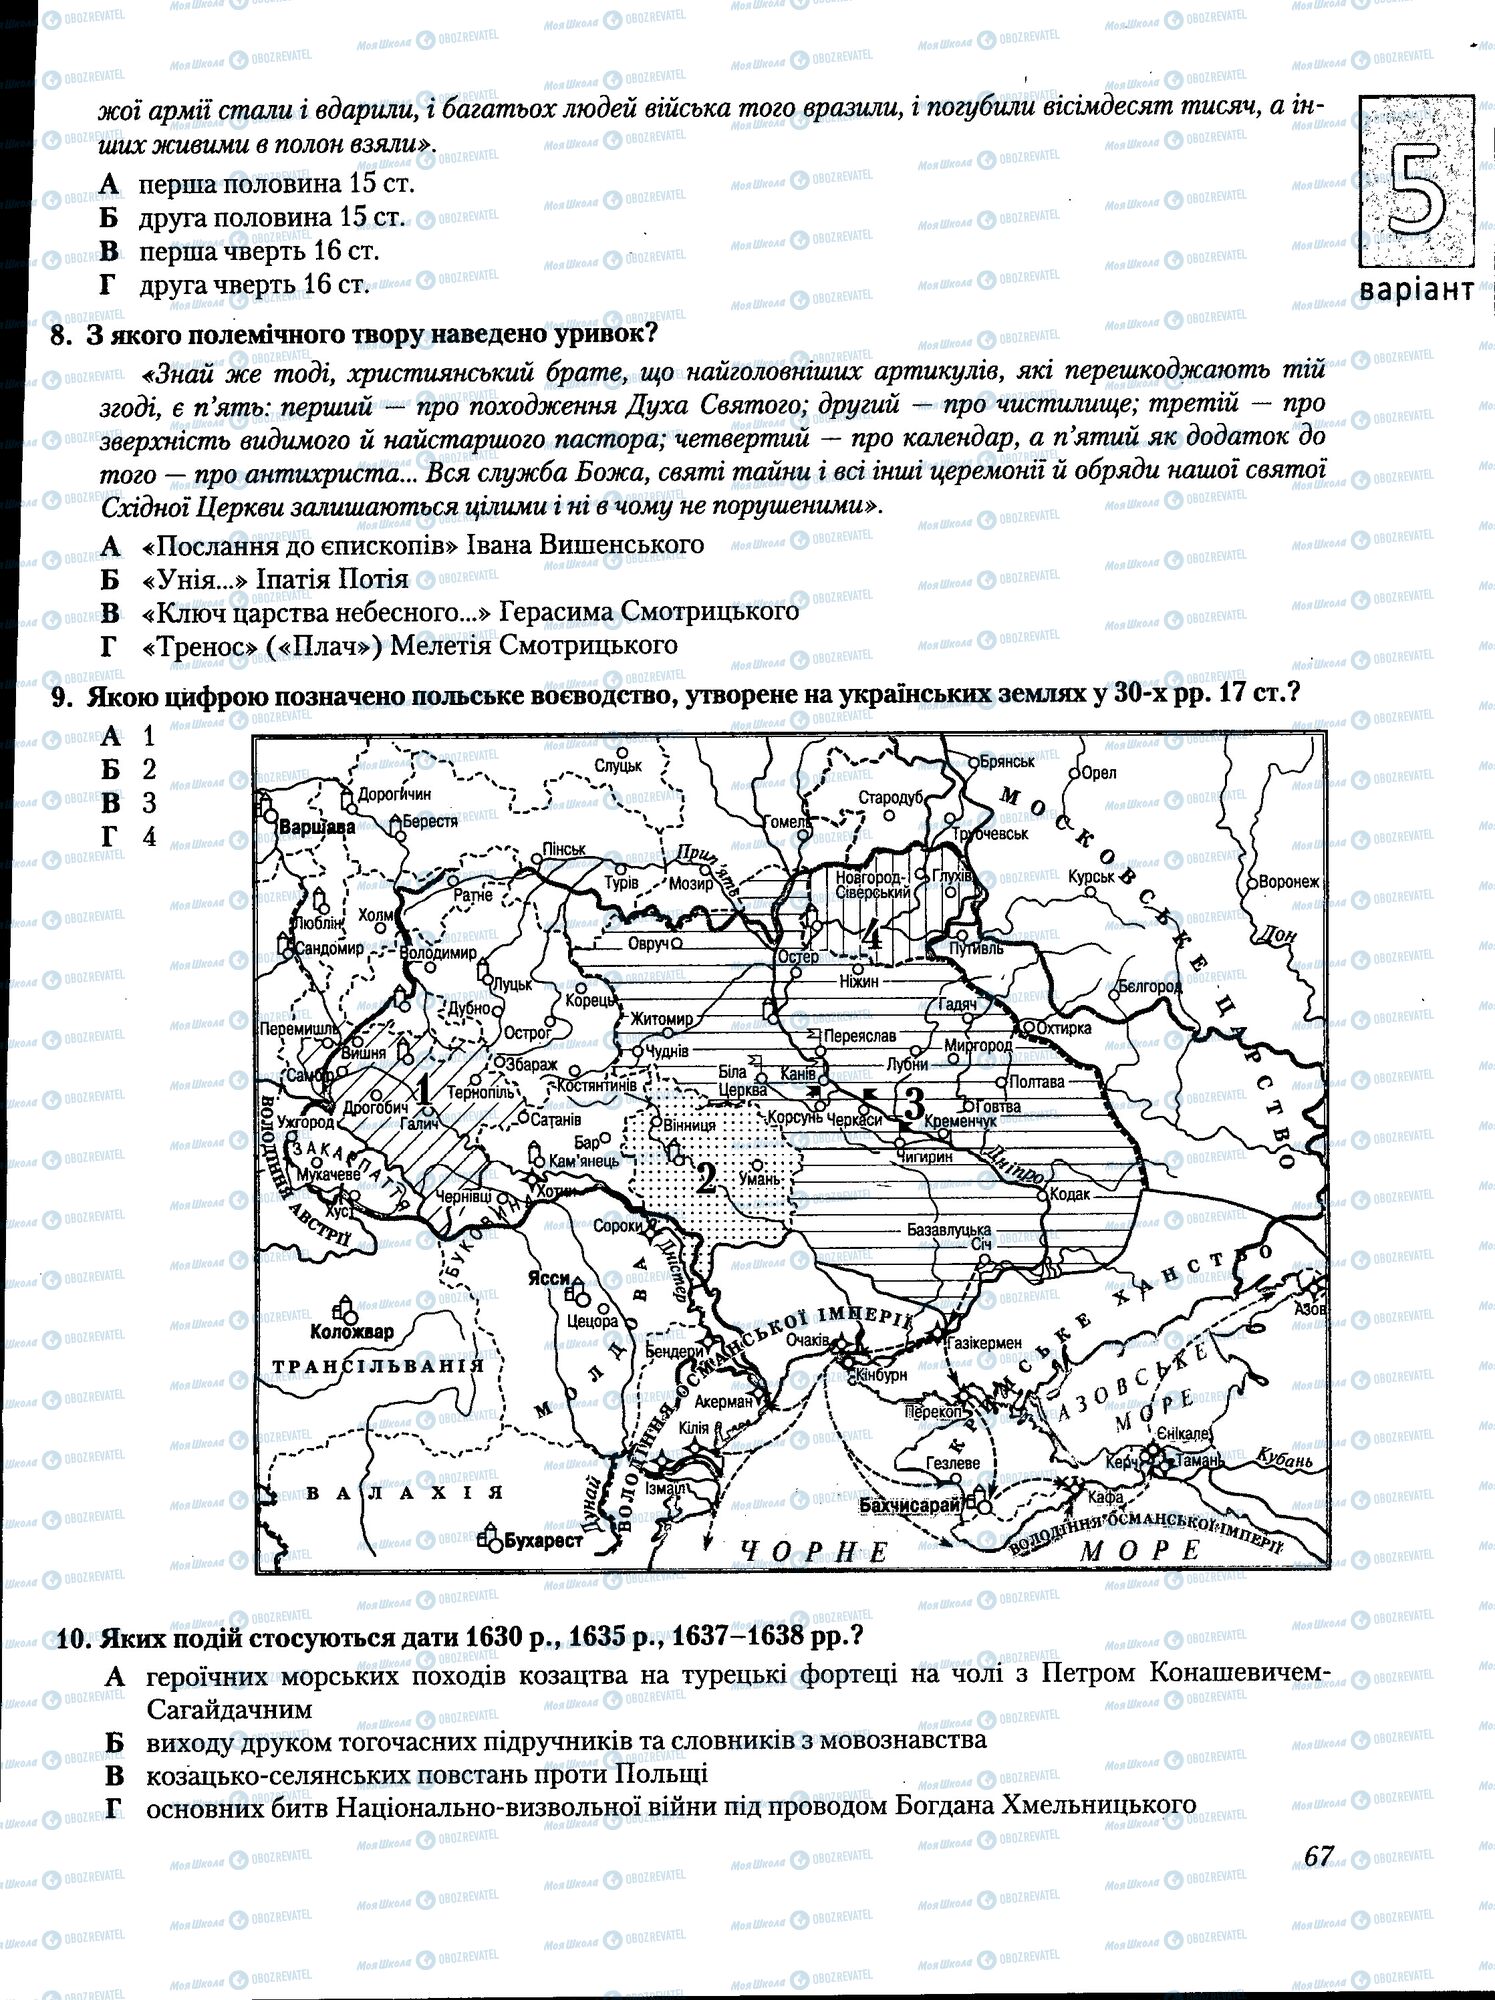 ЗНО История Украины 11 класс страница 067